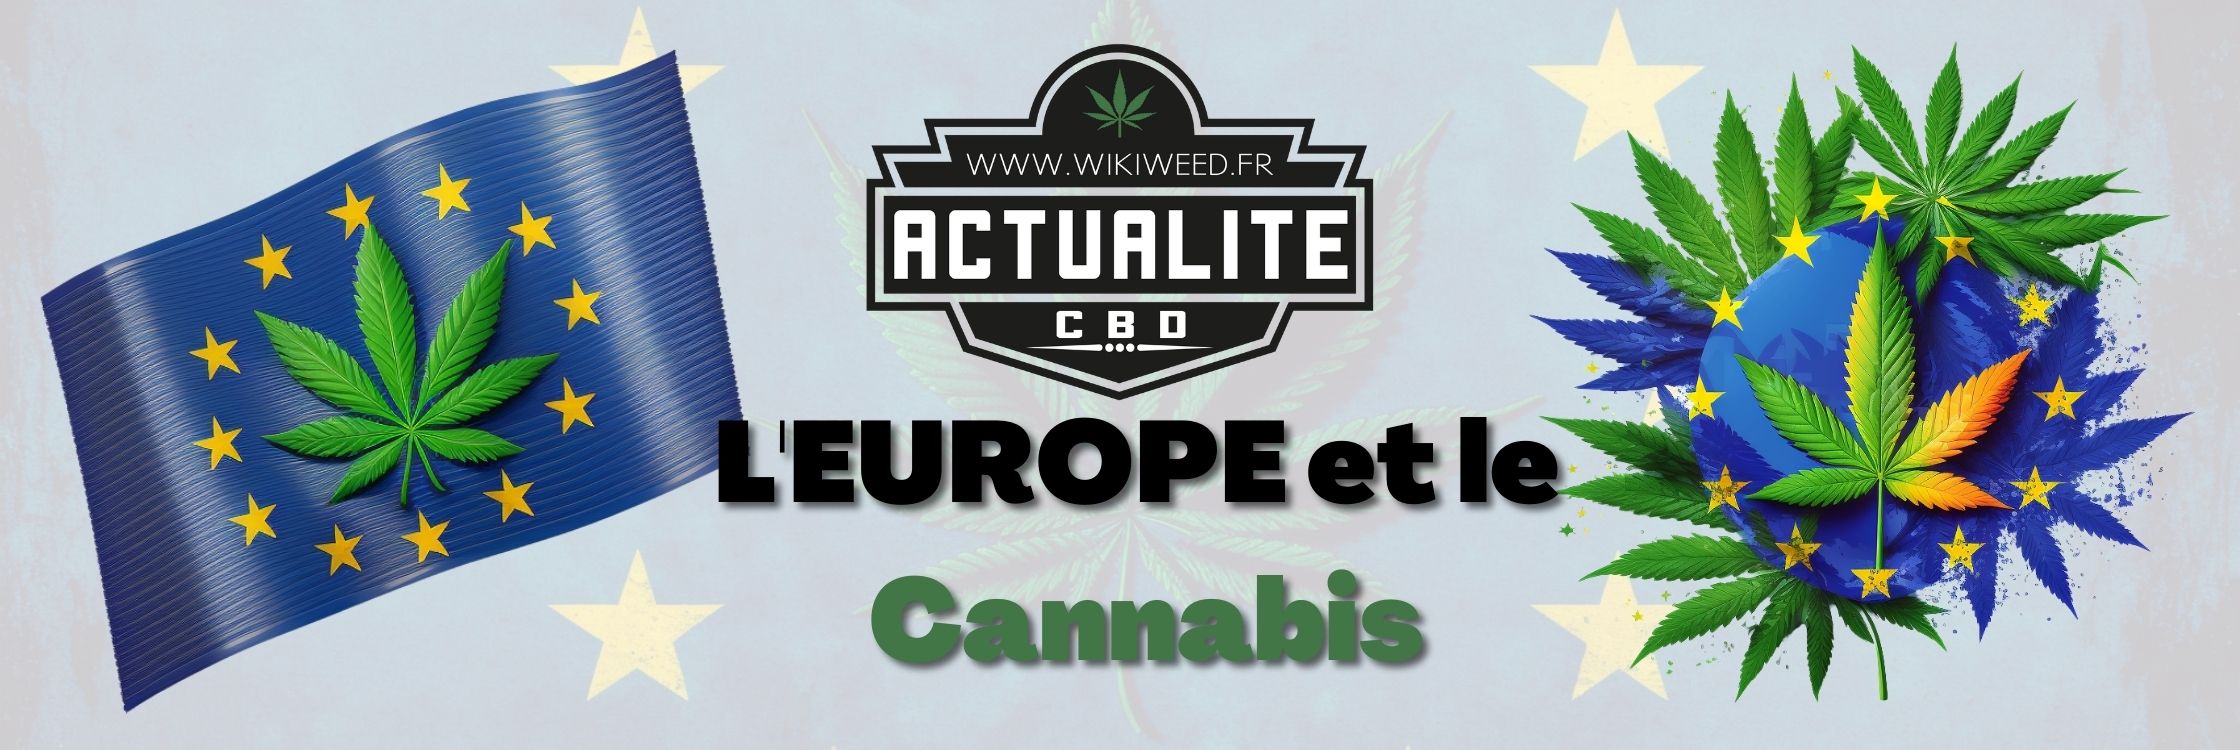 L'Europe et le Cannabis